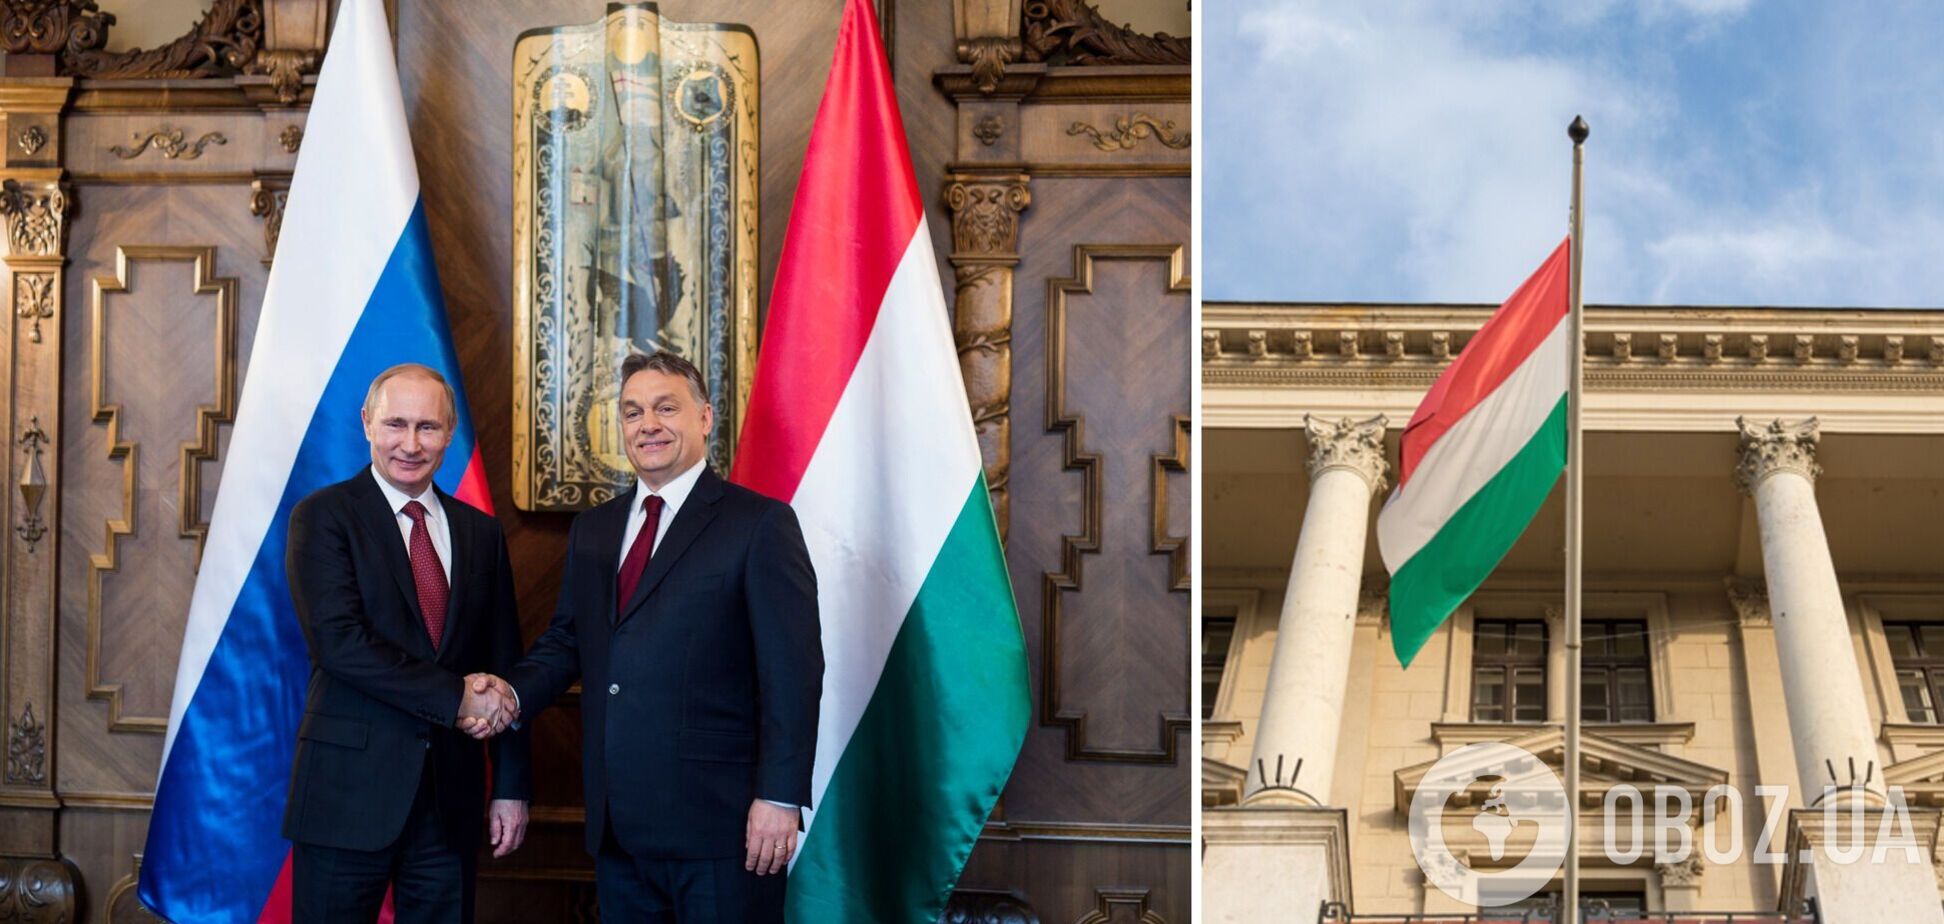 Венгерские евроскептики готовят новую пропагандистскую акцию в Будапеште: будут призывать к 'миру' с Россией – СМИ